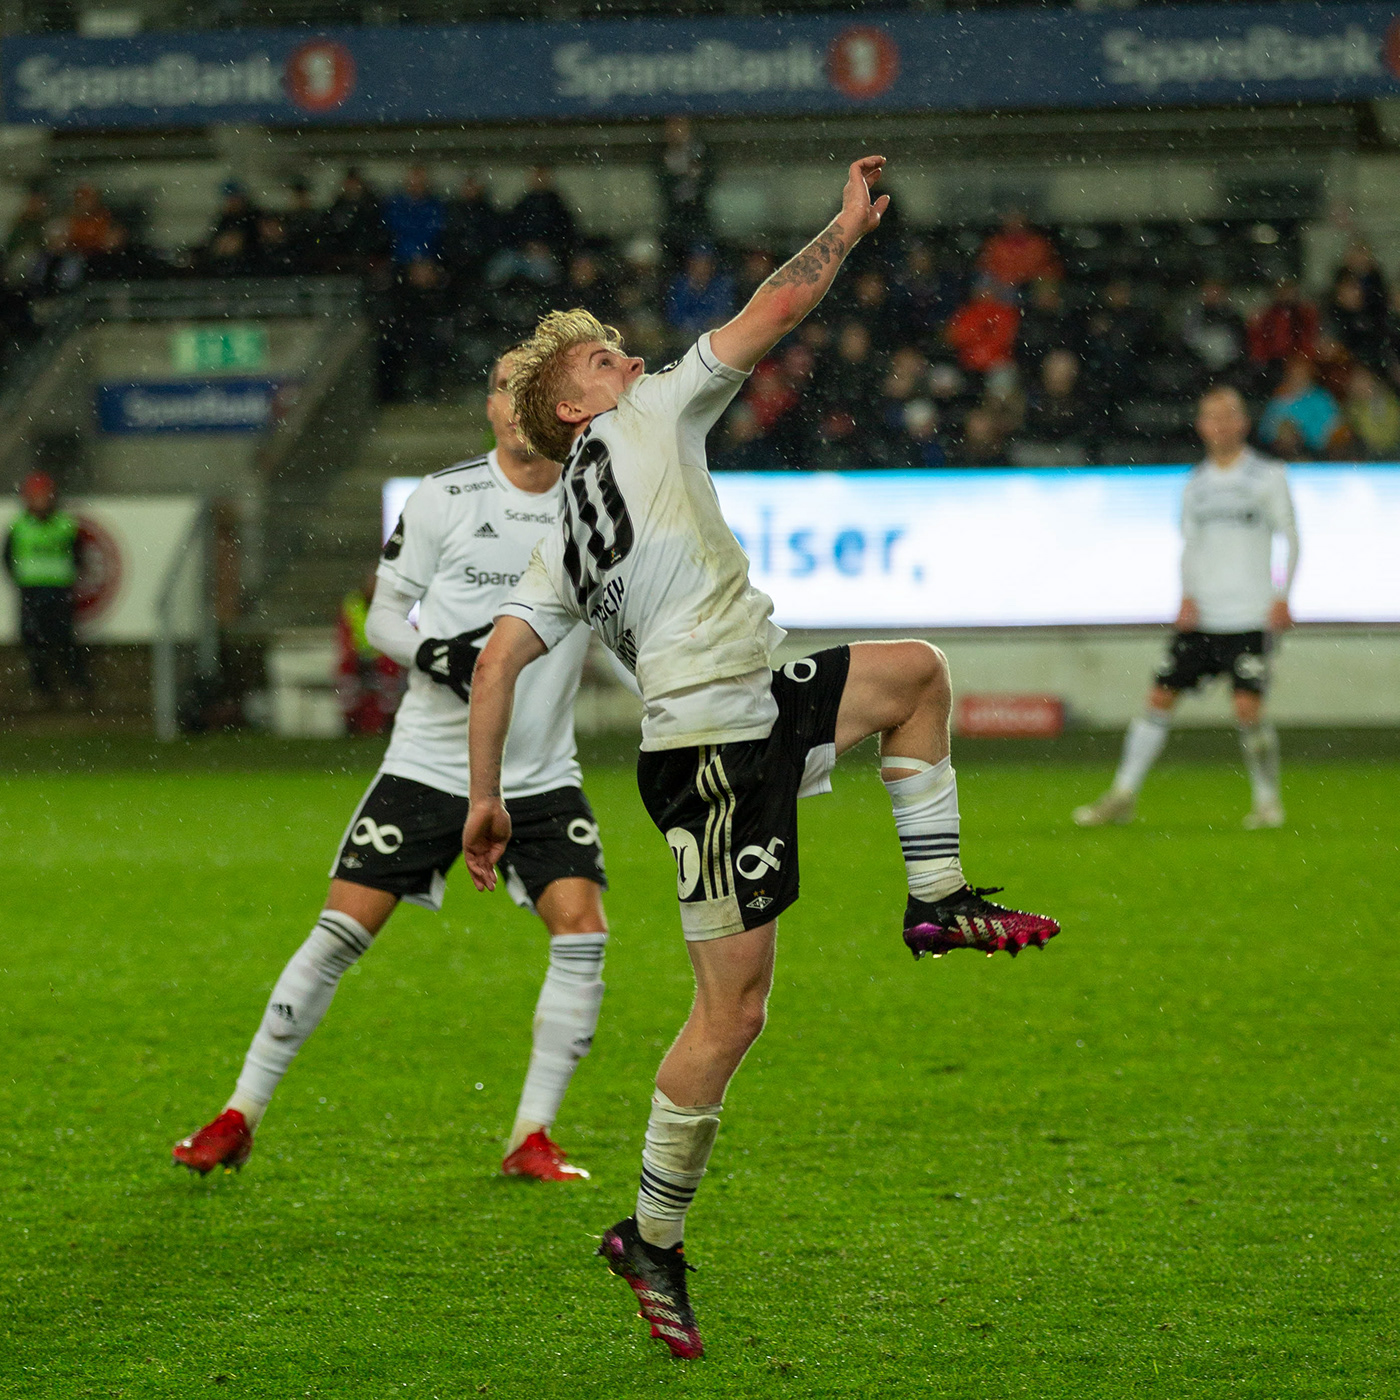 molde RBK Rosenborg Rosenborg vs molde trondheim Canon football soccer sport sports photography